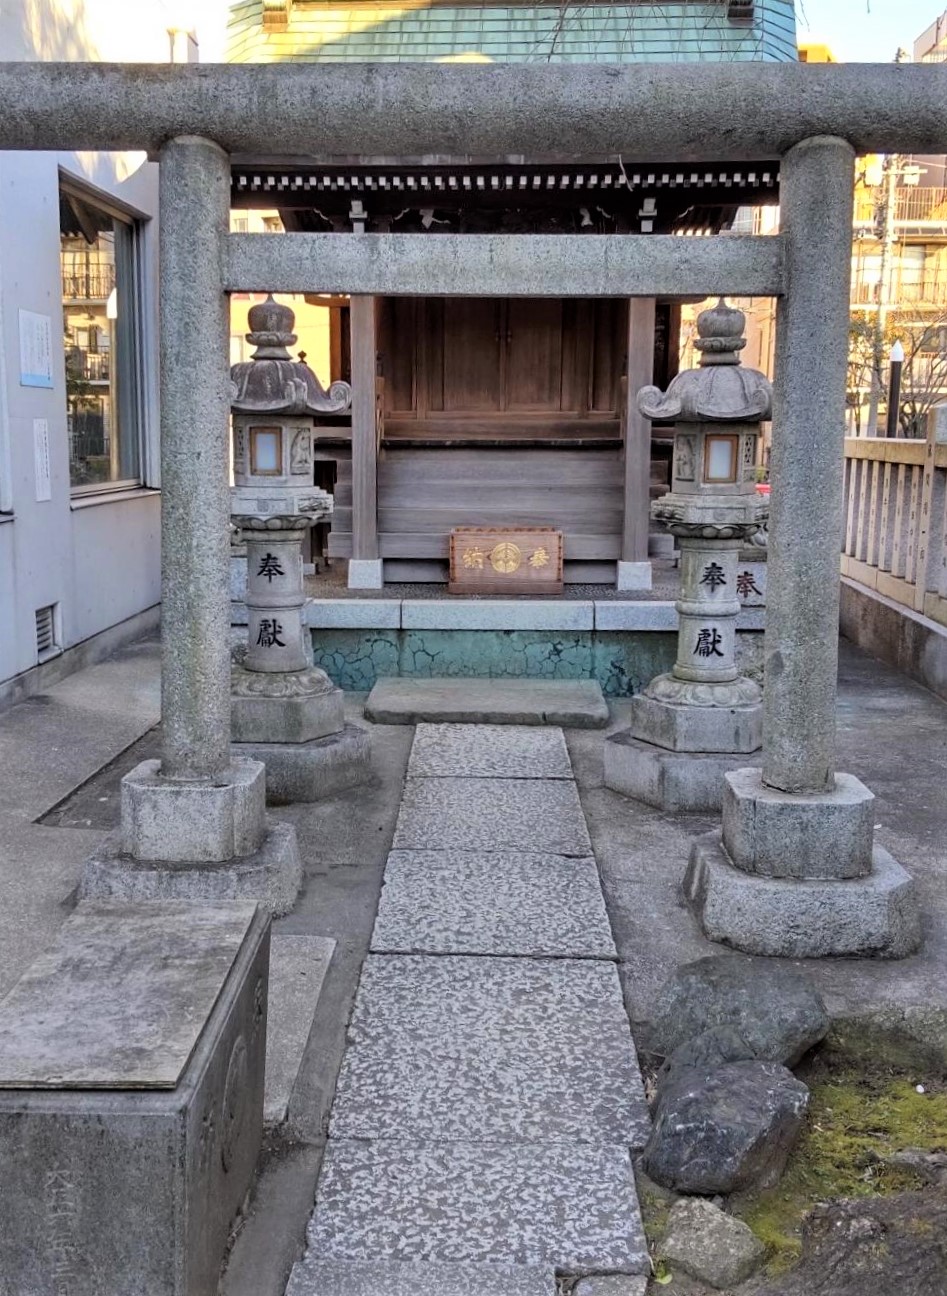 住吉神社境内の「入船稲荷神社」と銅製灯籠